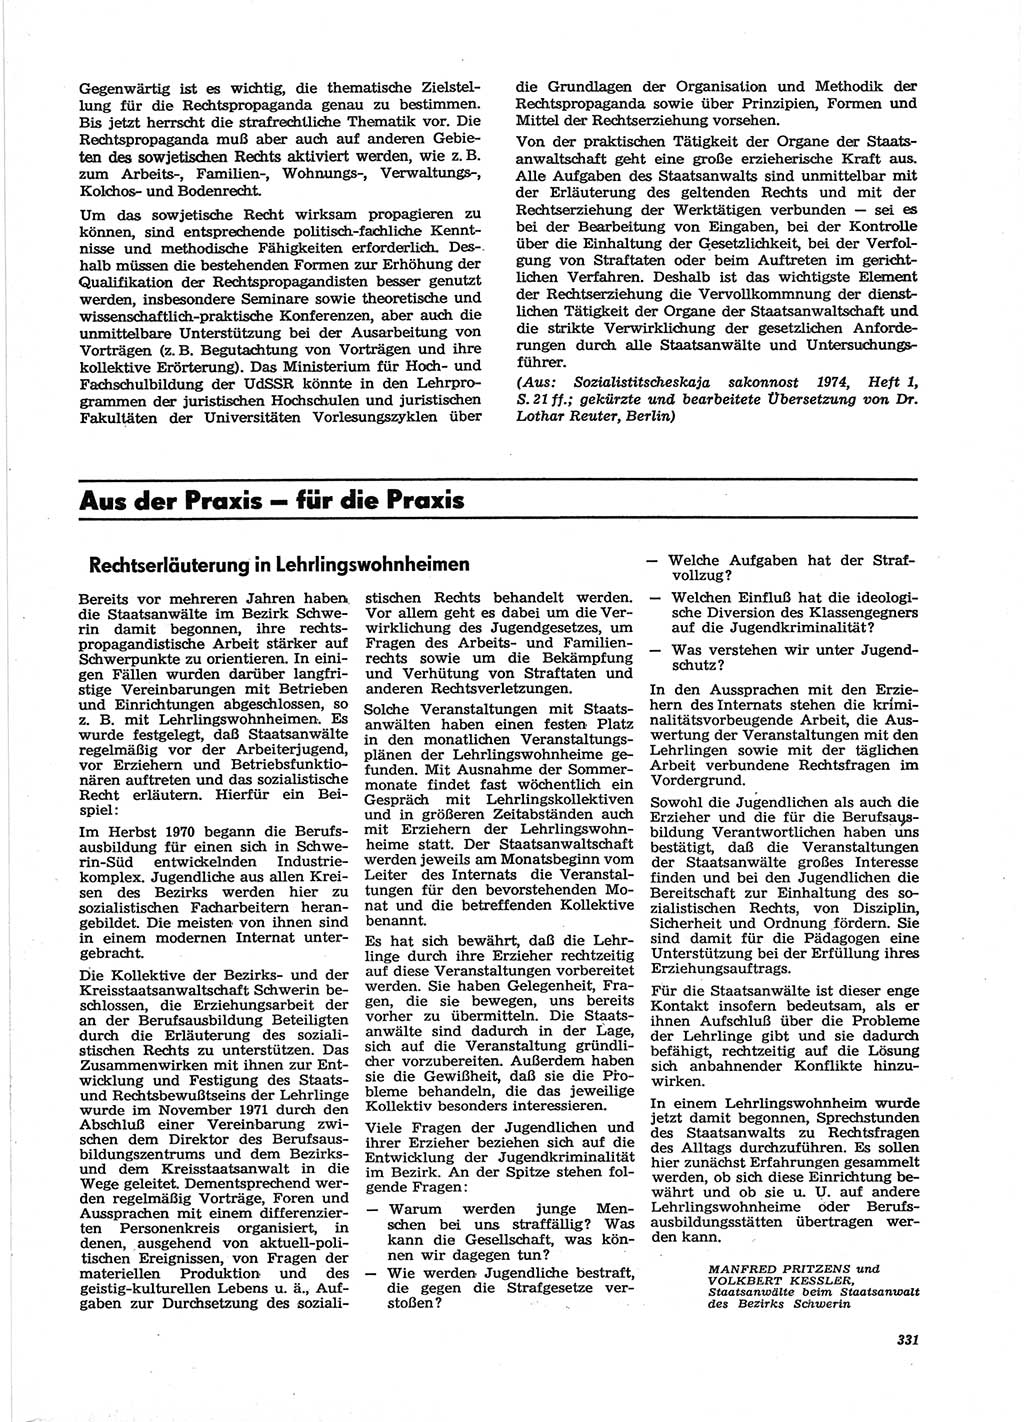 Neue Justiz (NJ), Zeitschrift für Recht und Rechtswissenschaft [Deutsche Demokratische Republik (DDR)], 28. Jahrgang 1974, Seite 331 (NJ DDR 1974, S. 331)